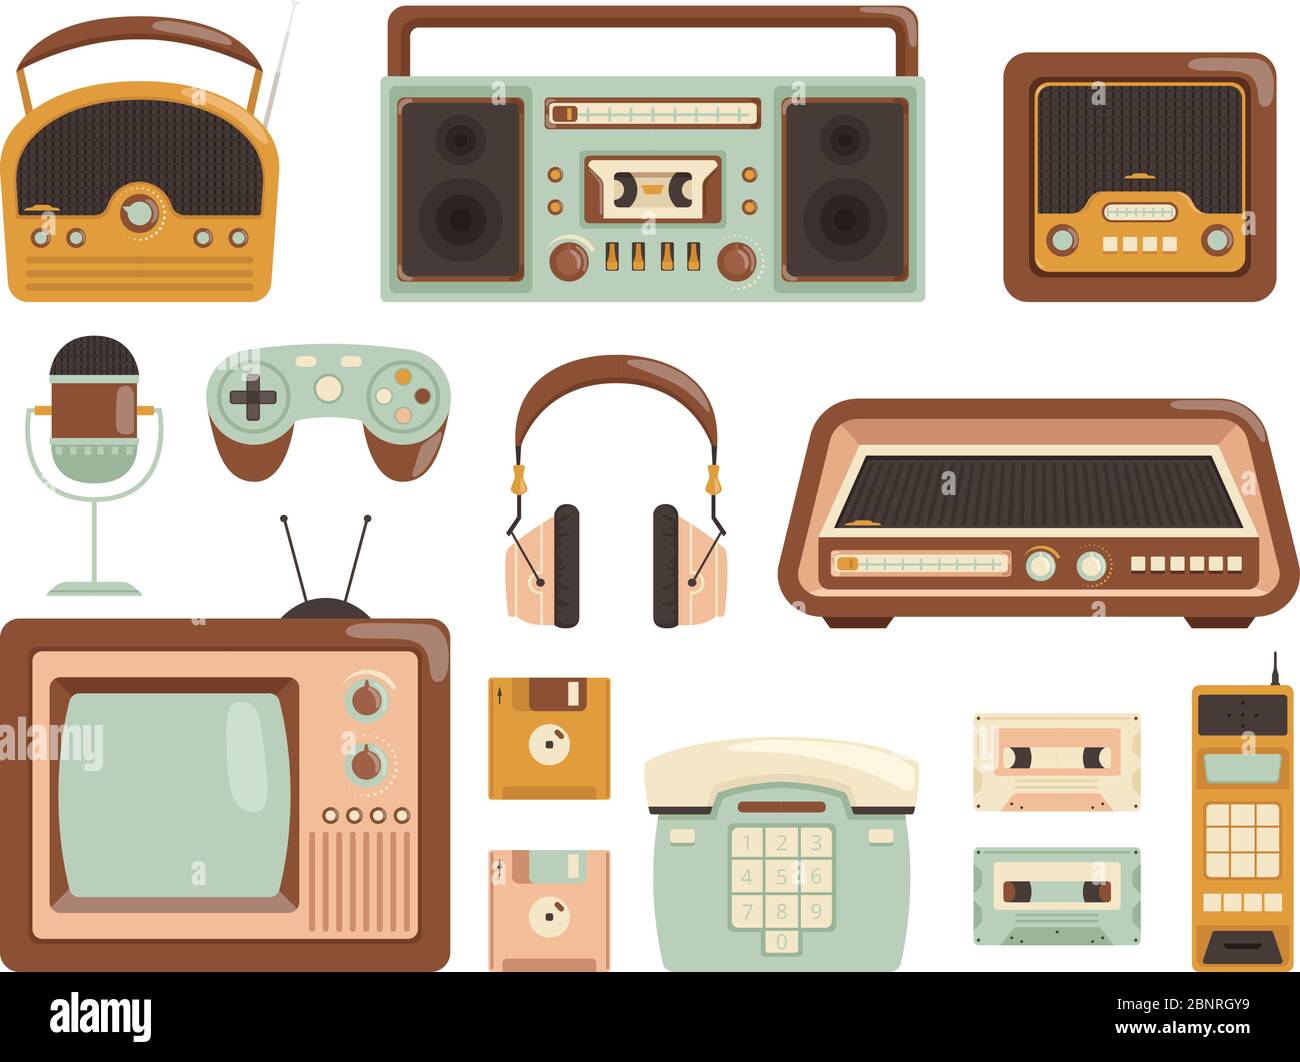 Gadget retrò. 80s registratore elettronico a cassetta nastro audio lettore musicale radio cellulare immagini vettoriali Illustrazione Vettoriale